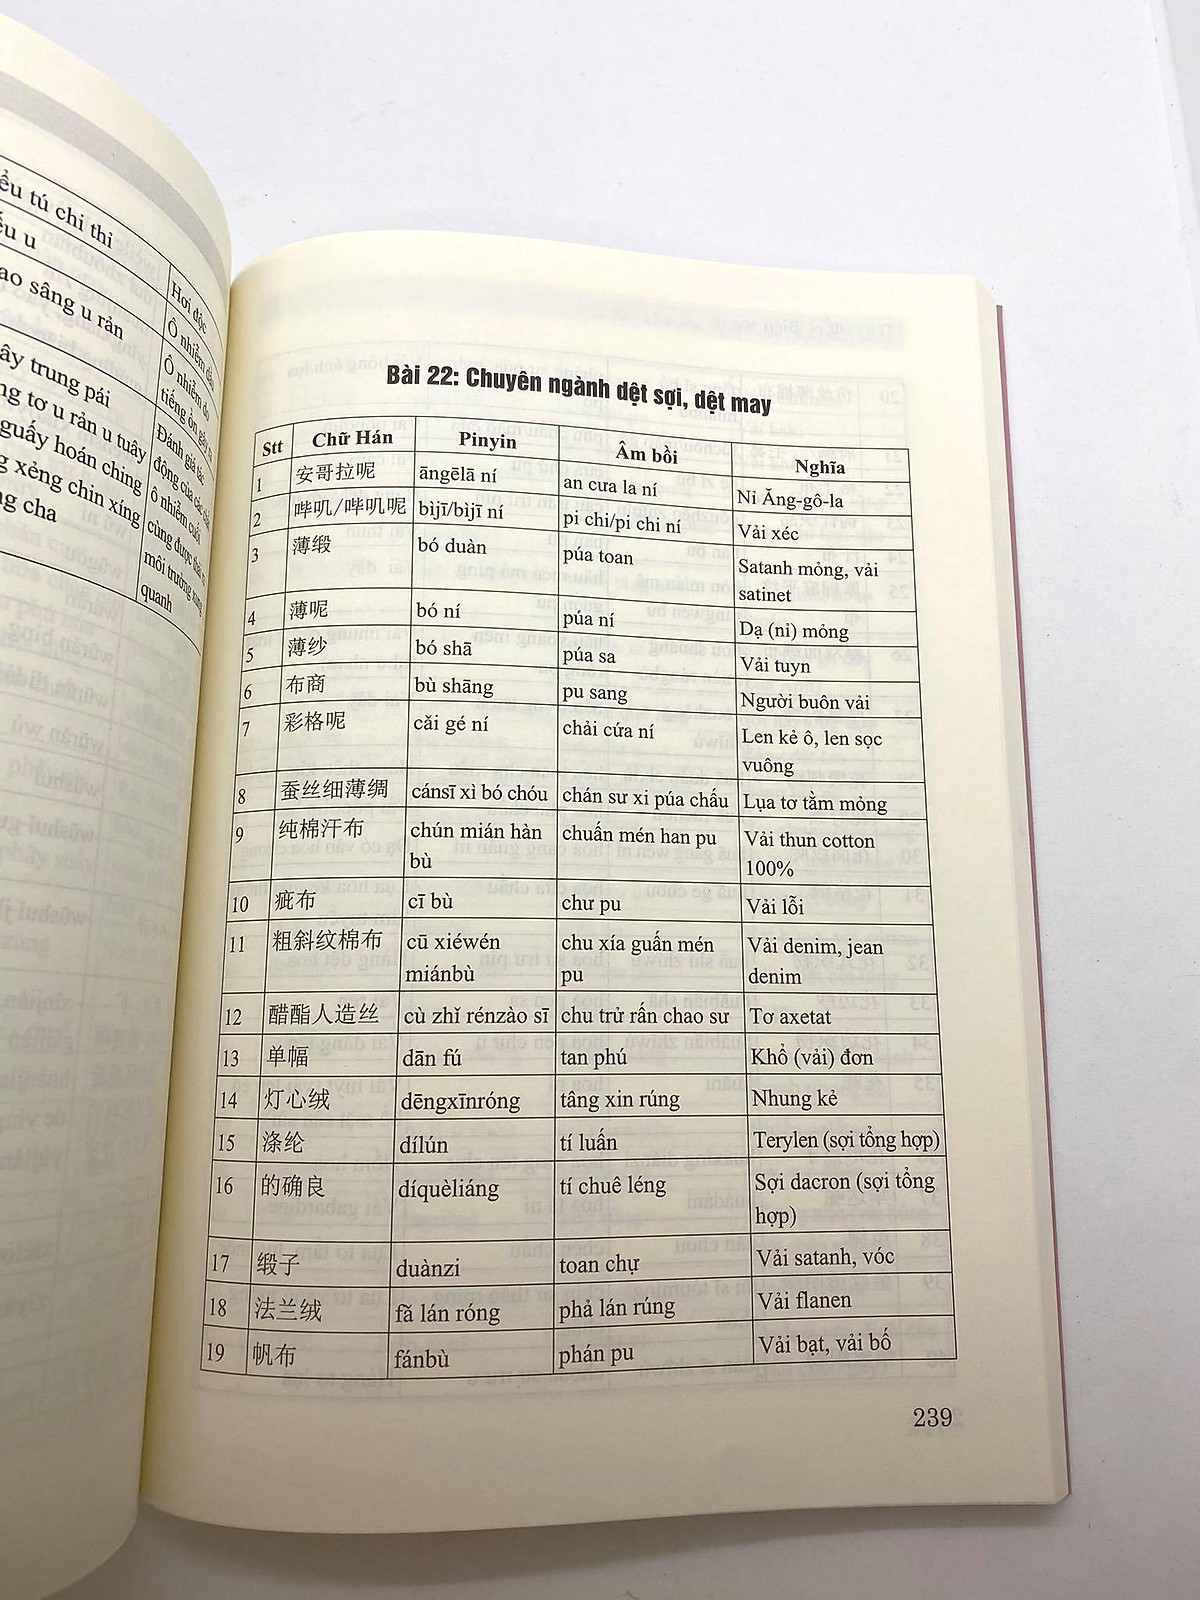 Sách - Combo 2 sách Siêu trí nhớ 1000 chữ hán tập 3 và Tự học tiếng Trung văn phòng công xưởng ngành may mặc, giày da, gổ, kế toán, xuất nhập khẩu, điện tử,... có pinyin,âm bồi, mp3 nghe+DVD tài liệu